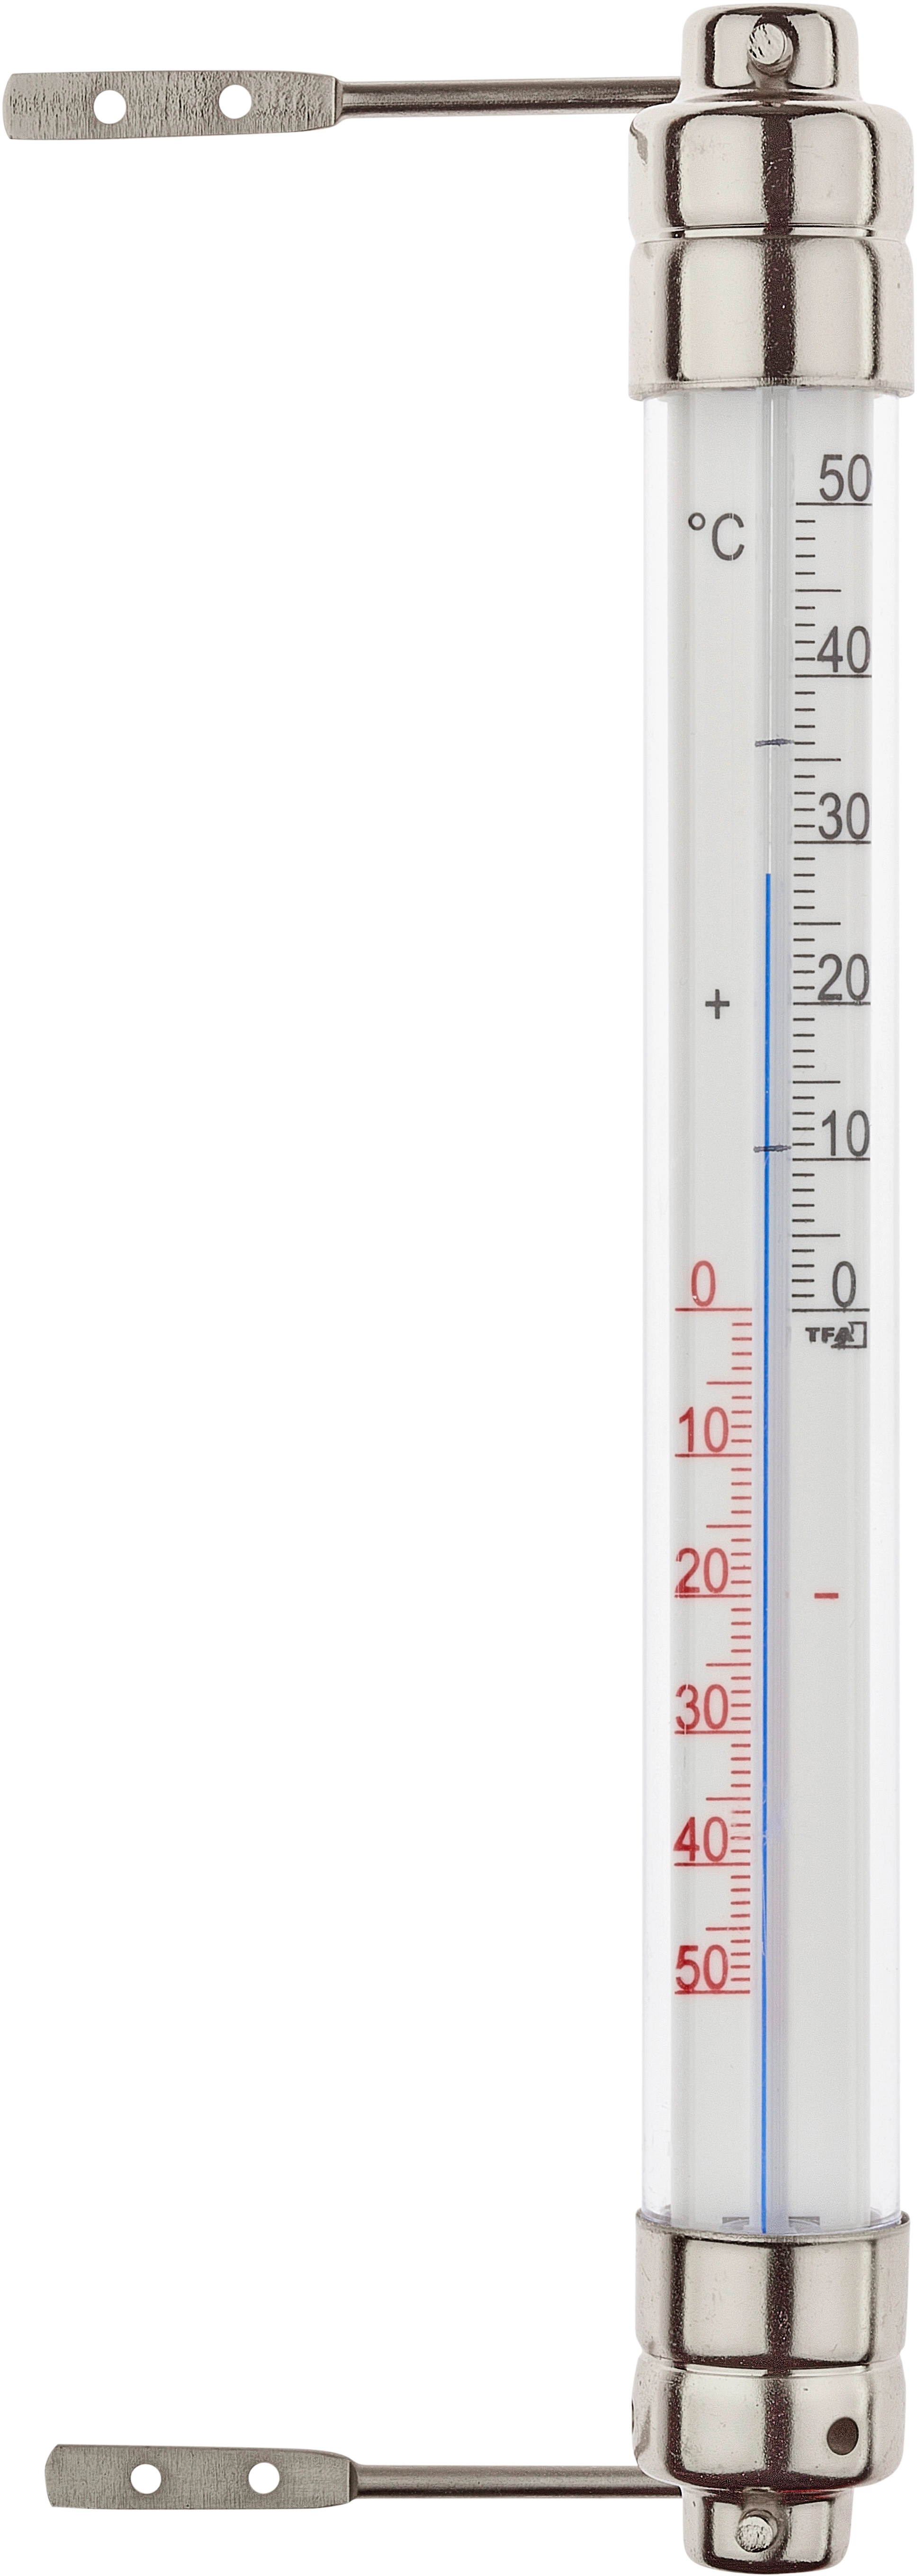 Analoges Kühlthermometer